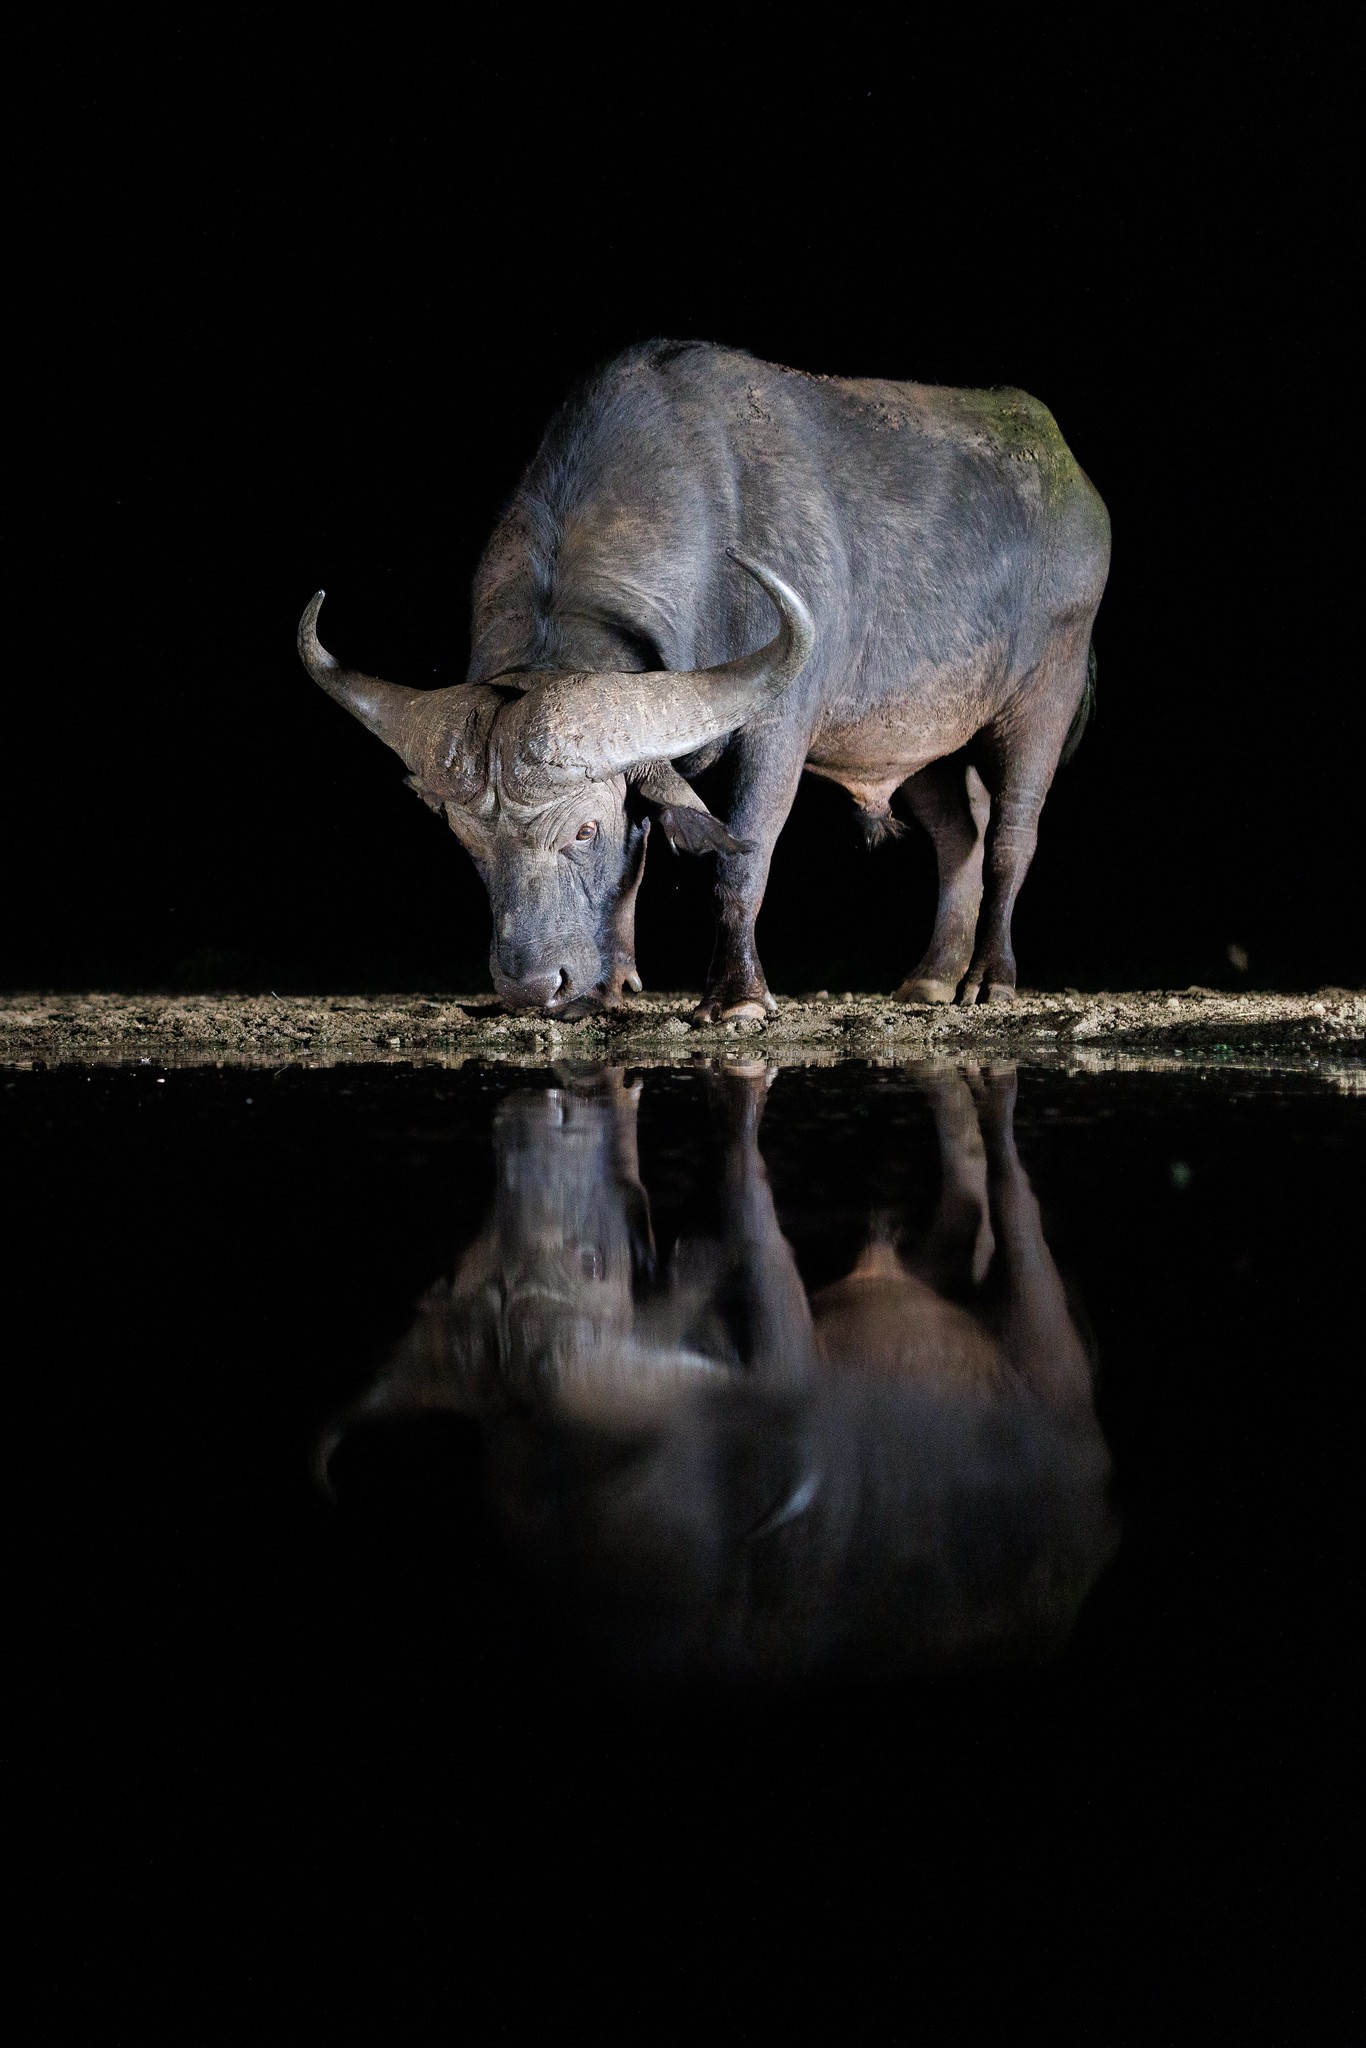 Buffalo - Zimanga, South Africa